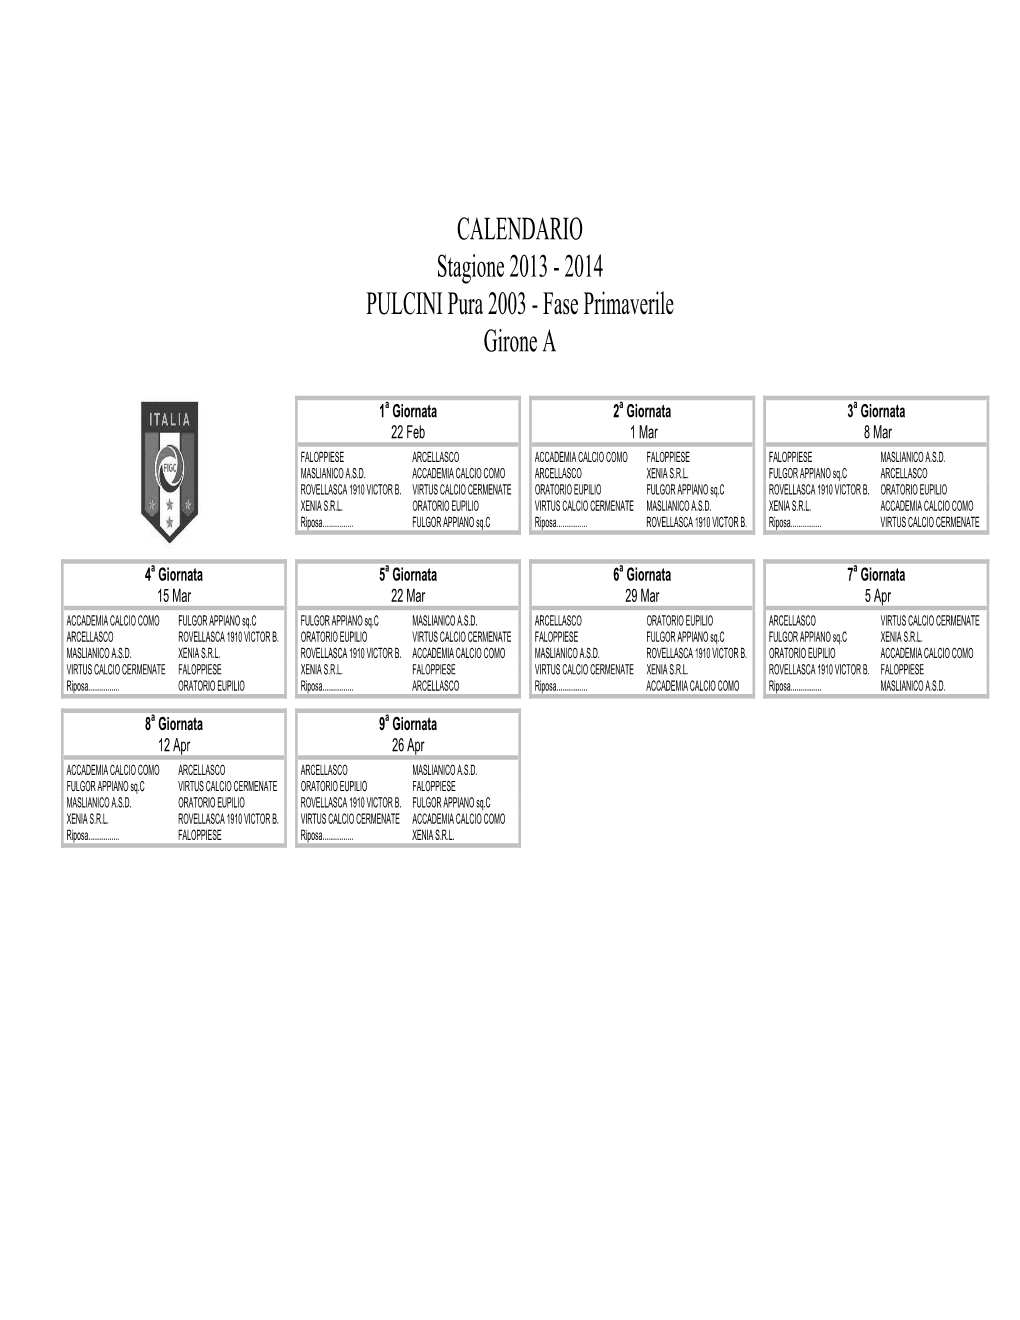 CALENDARIO Stagione 2013 - 2014 PULCINI Pura 2003 - Fase Primaverile Girone A